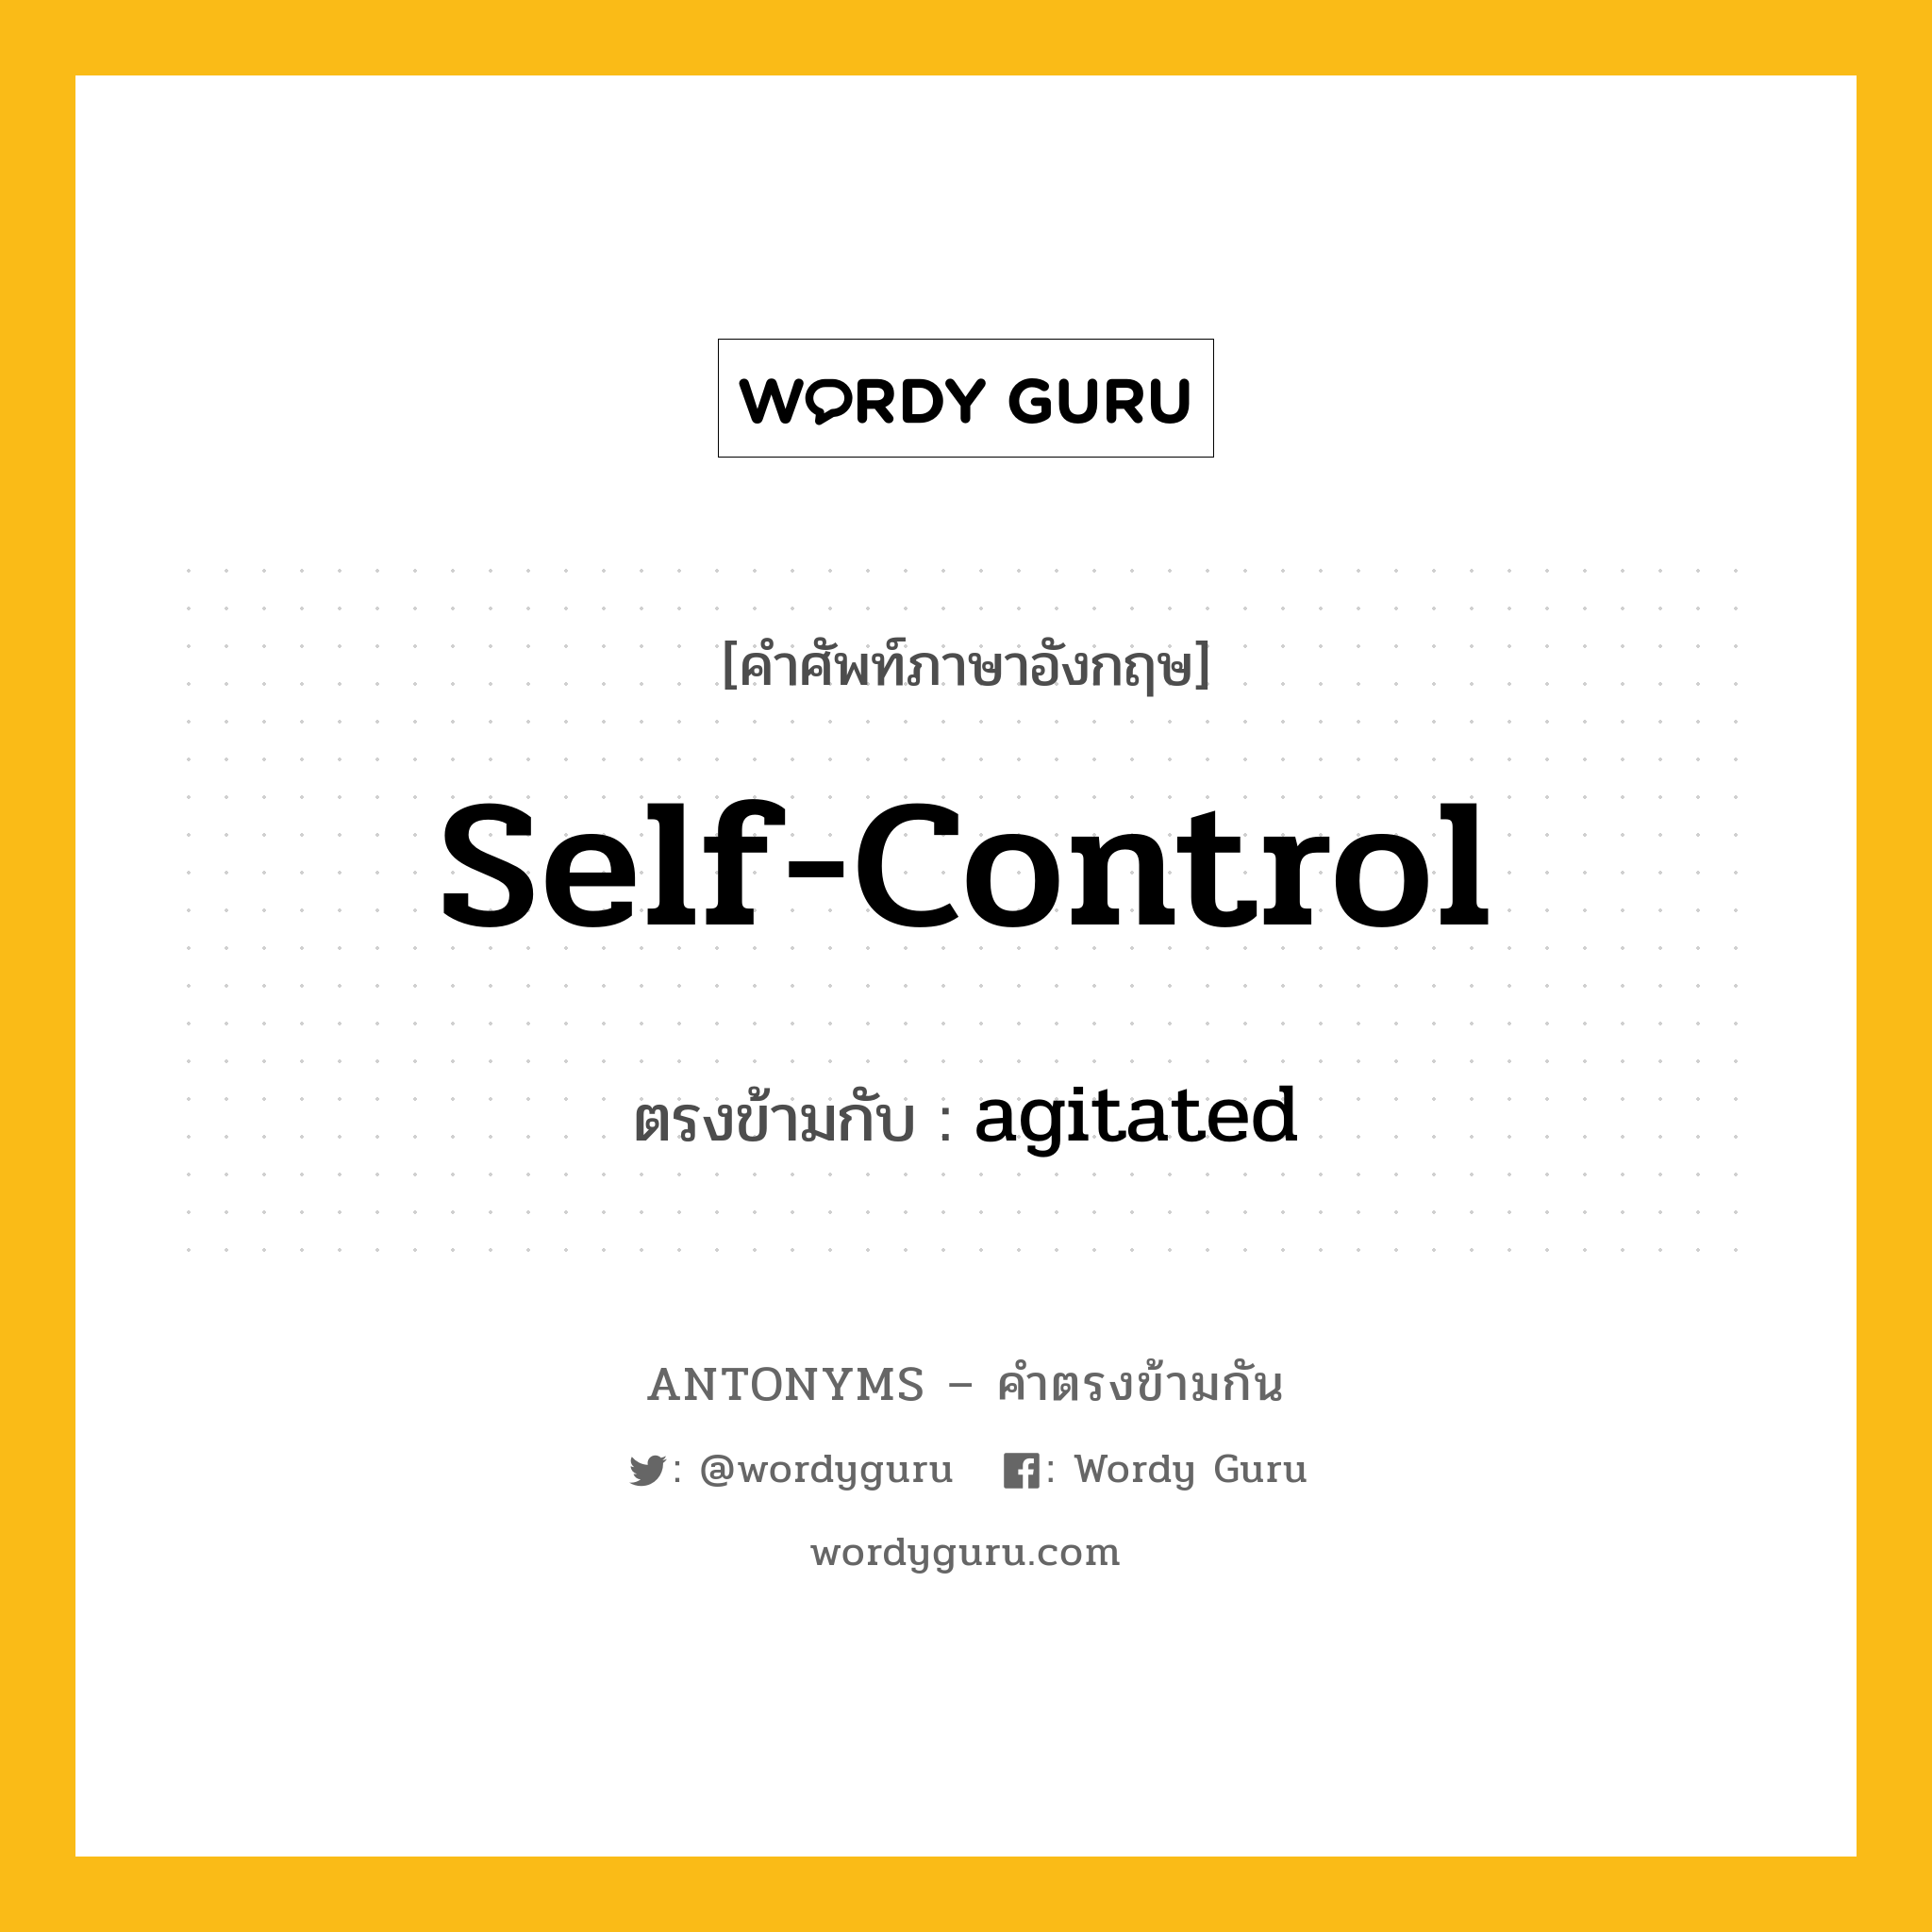 self-control เป็นคำตรงข้ามกับคำไหนบ้าง?, คำศัพท์ภาษาอังกฤษที่มีความหมายตรงข้ามกัน self-control ตรงข้ามกับ agitated หมวด agitated